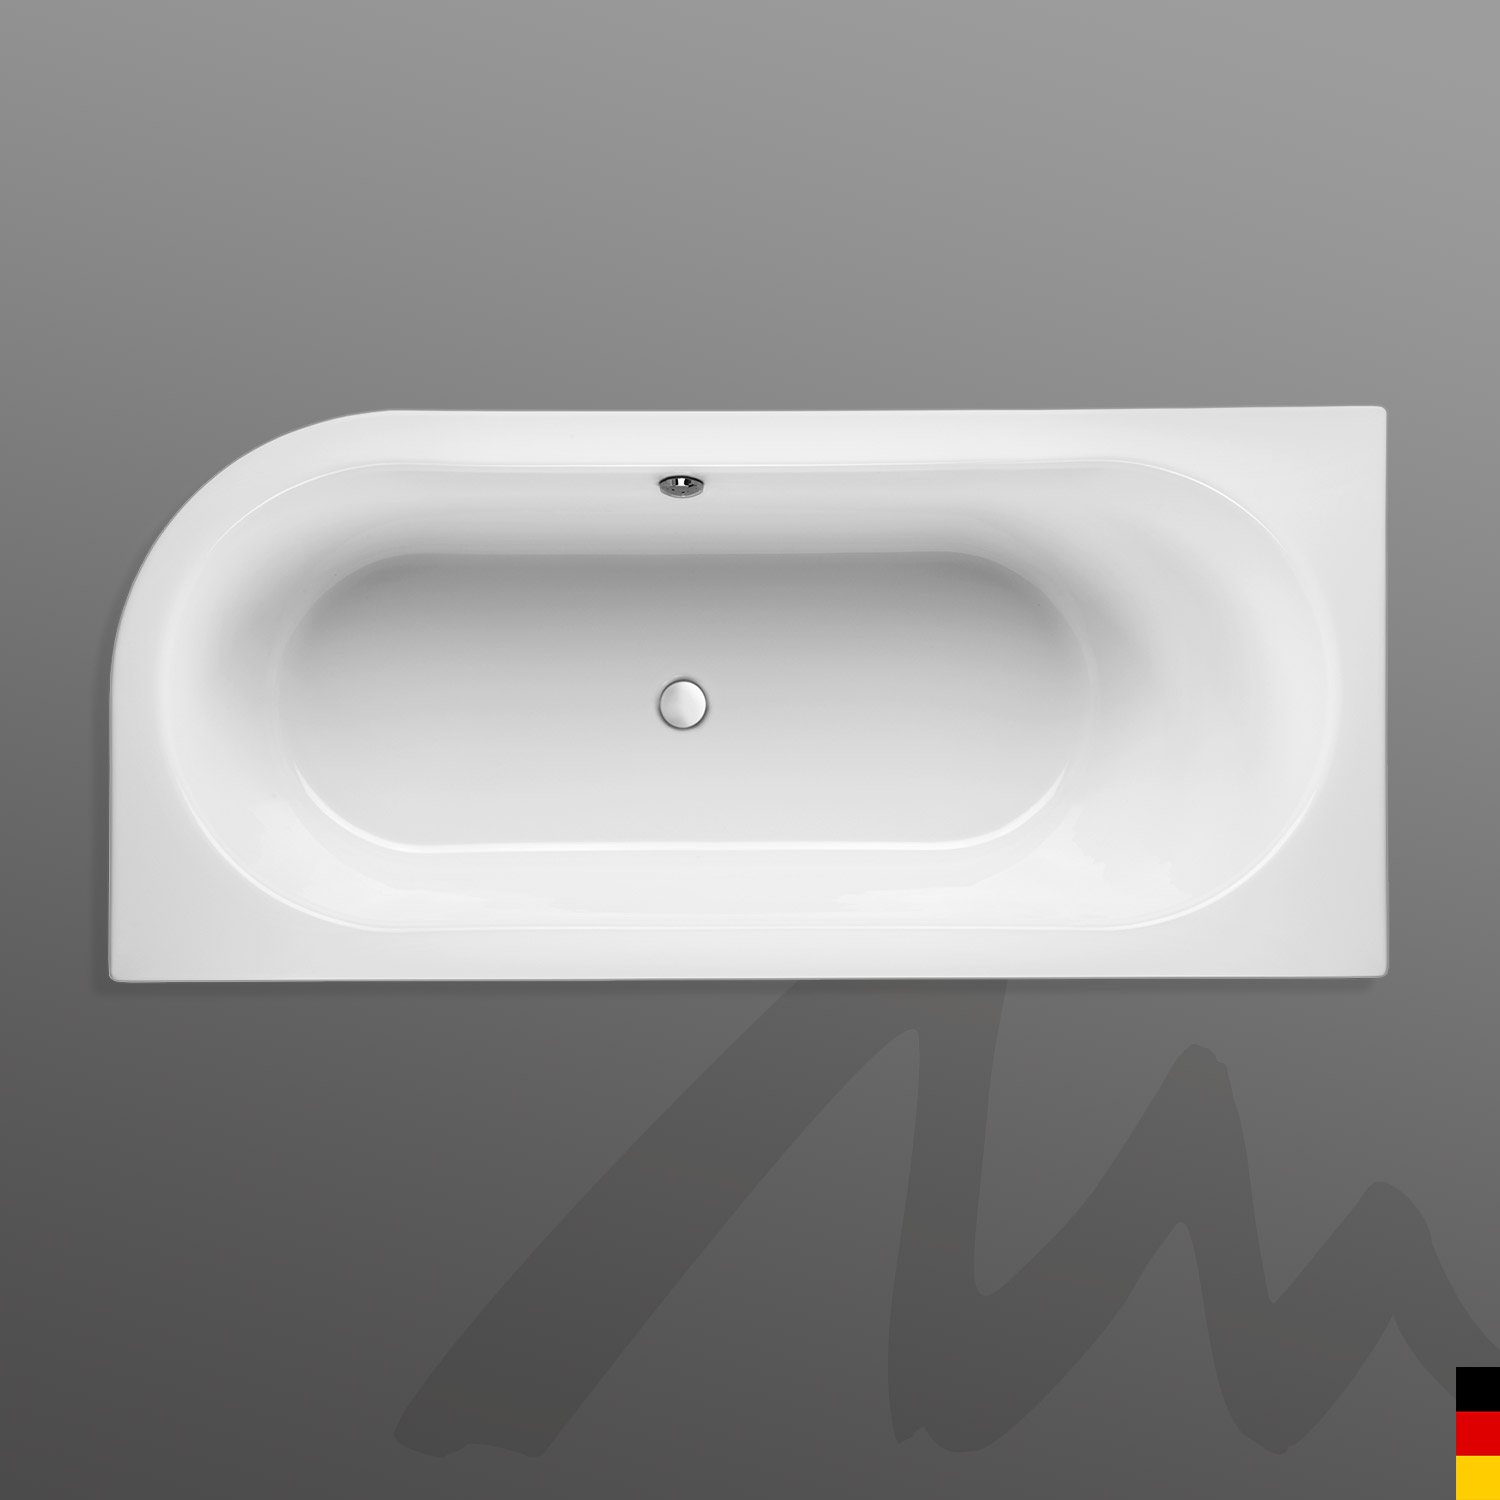 Mauersberger Badewanne Oval Primo 2 - 170/75 uno  170x75x44  Farbe:rein-weiß